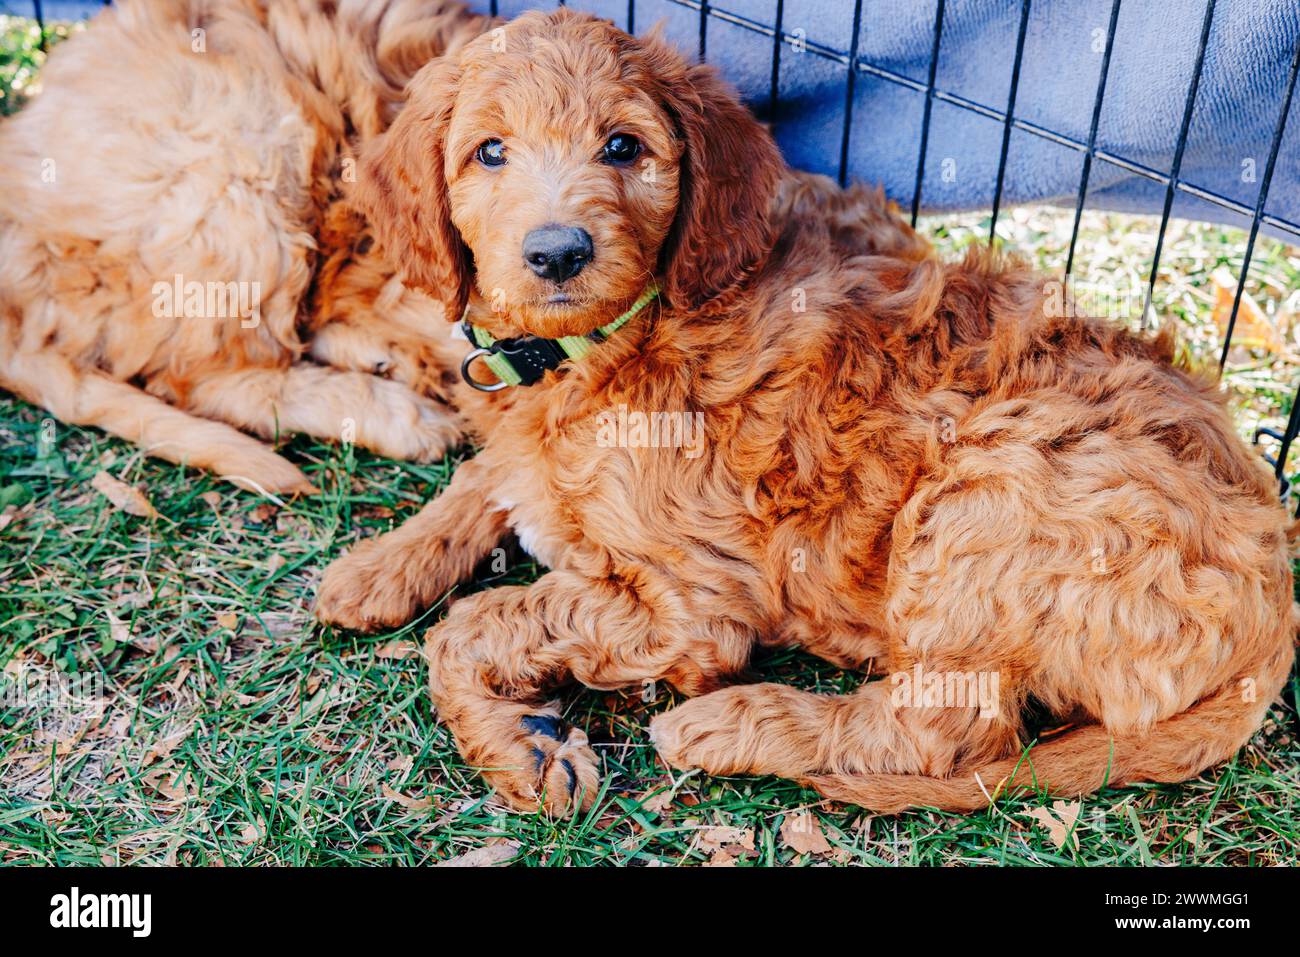 Cucciolo di Goldendoodle con colletto verde adagiato sull'erba Foto Stock